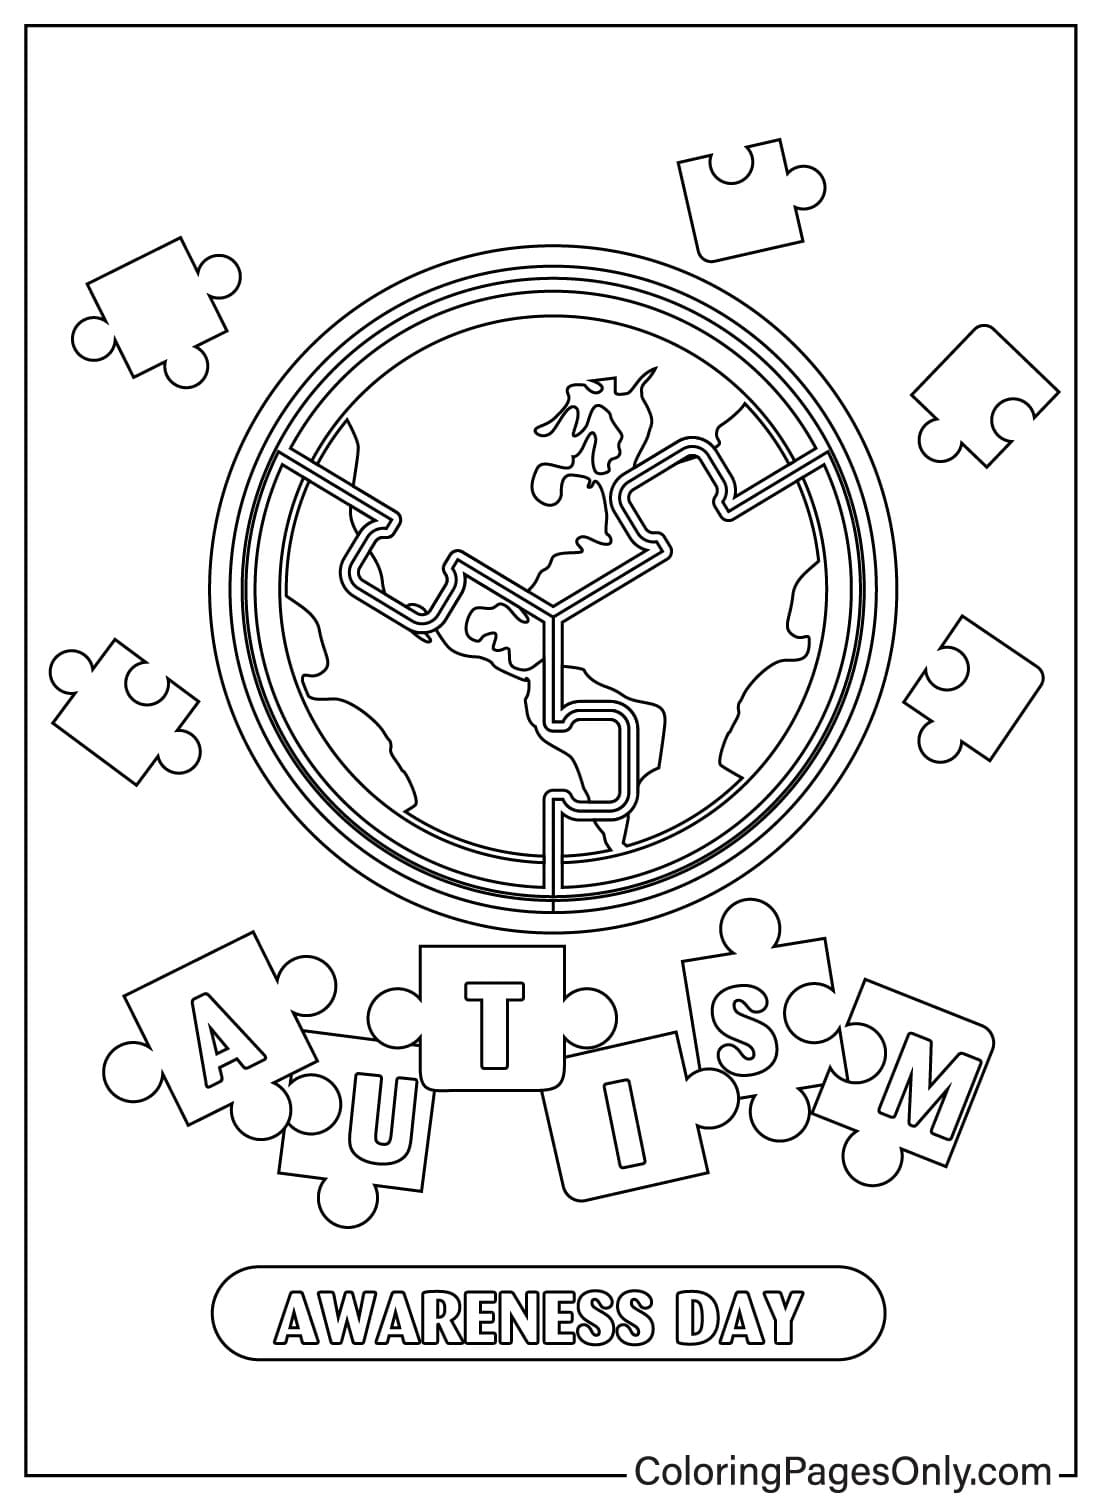 Immagini Foglio da colorare per la consapevolezza dell'autismo dalla Giornata mondiale della consapevolezza dell'autismo